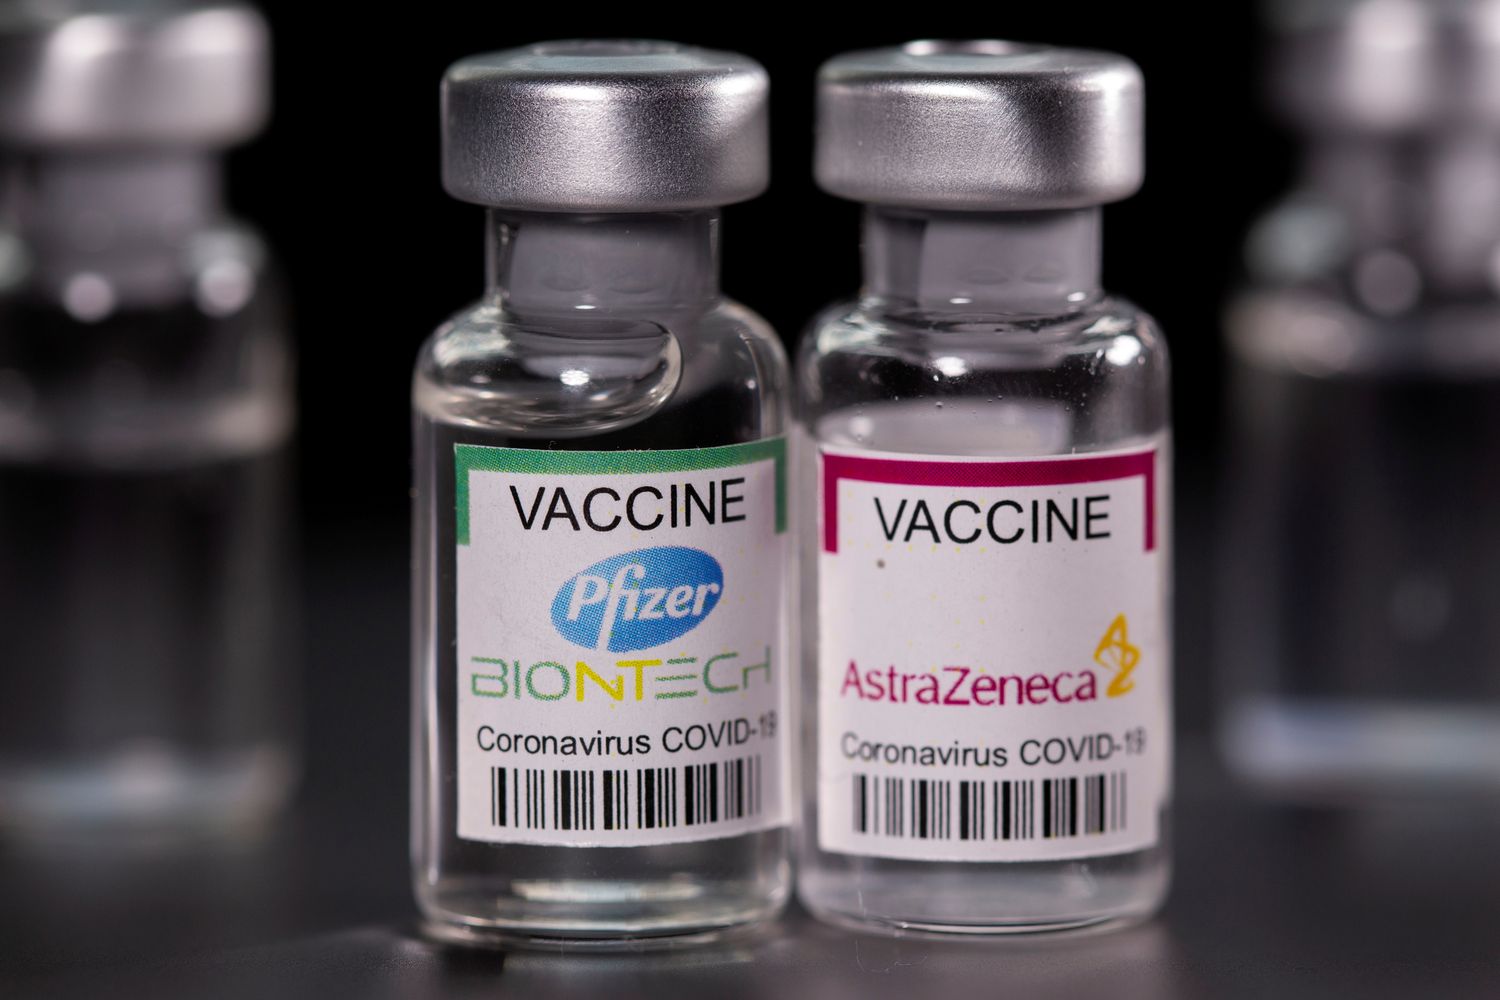 Η αποτελεσματικότητα των εμβολίων COVID-19 ενάντια στο “Δέλτα” στέλεχος